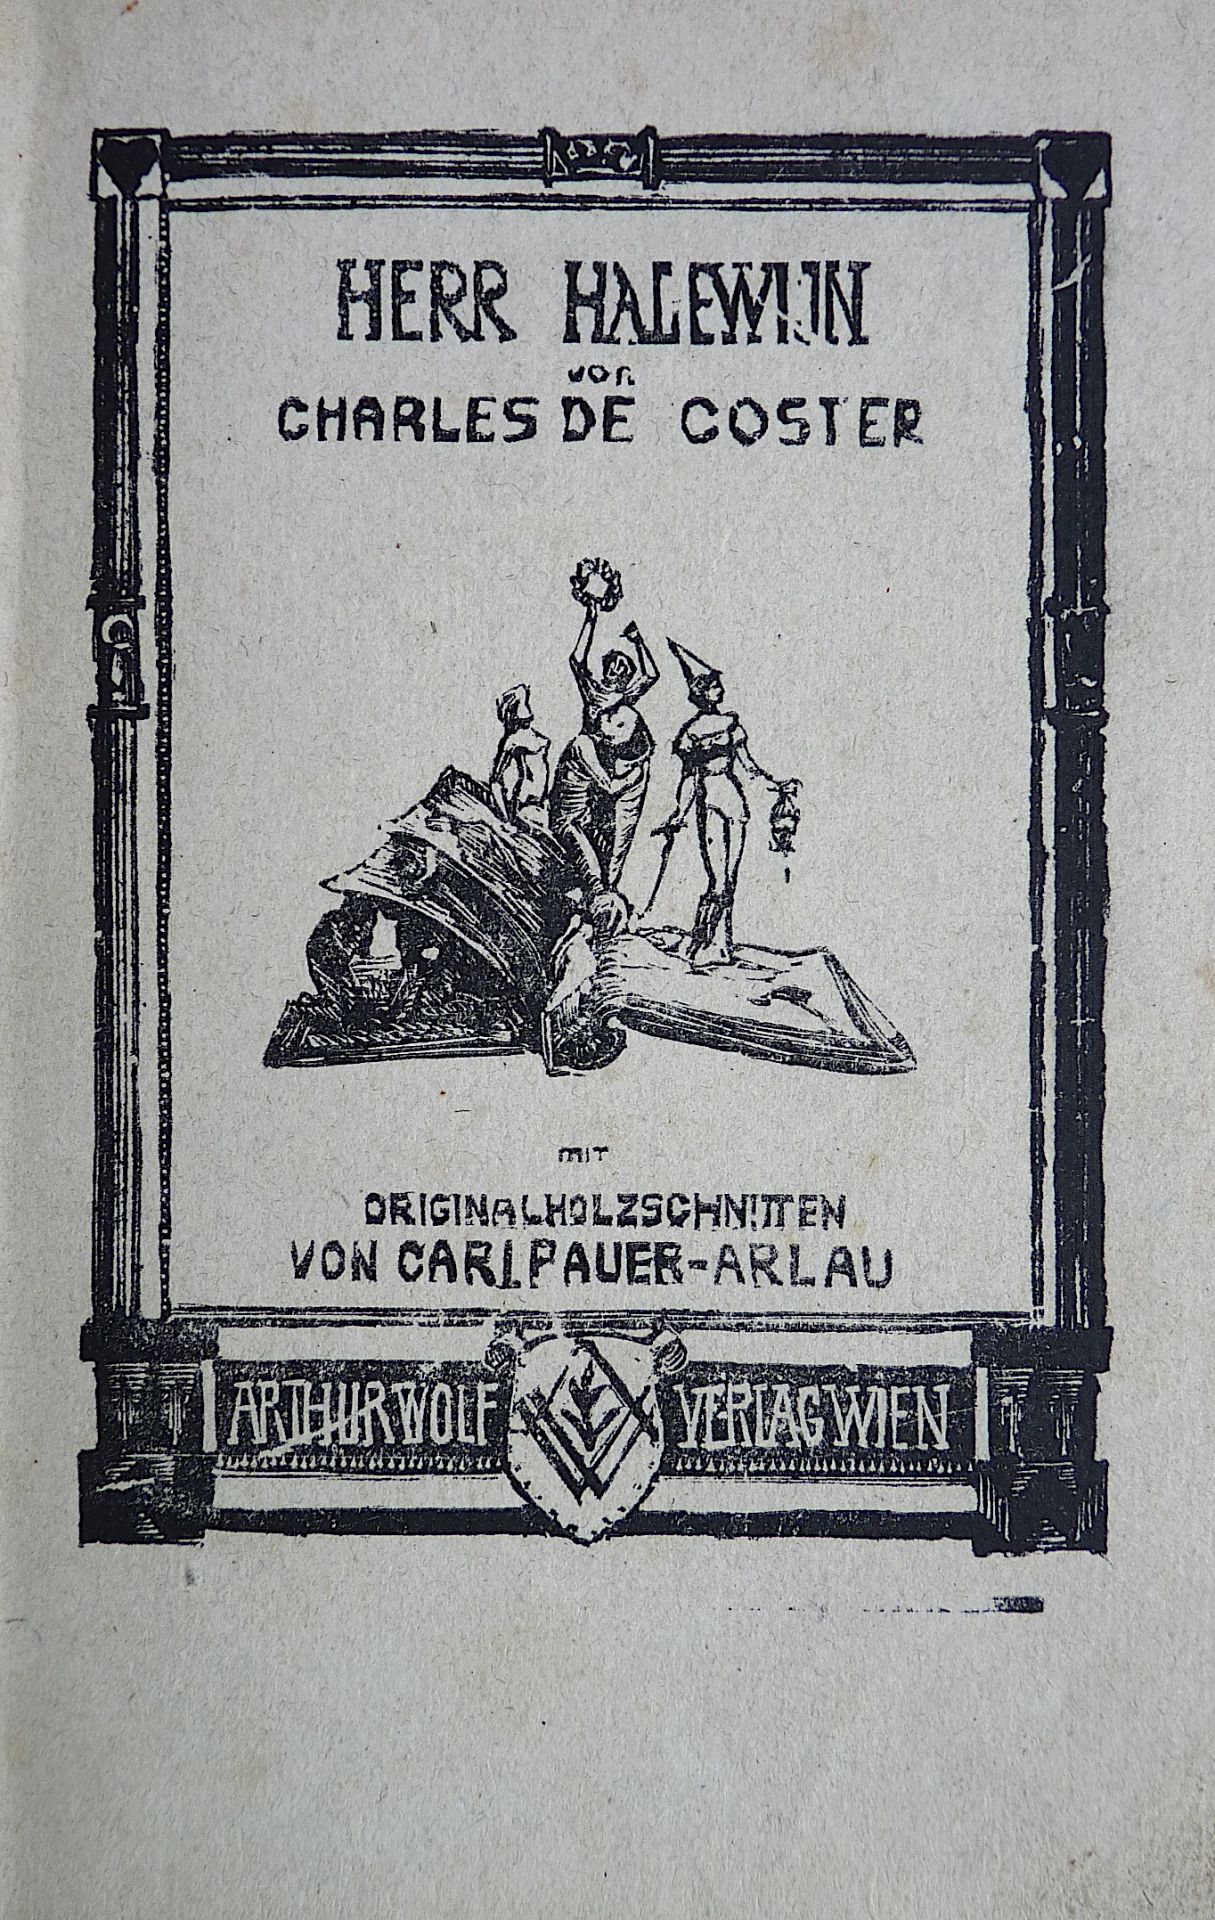 PAUER-ARLAU, CARL: "Herr Halewin", 1921 - Image 2 of 2